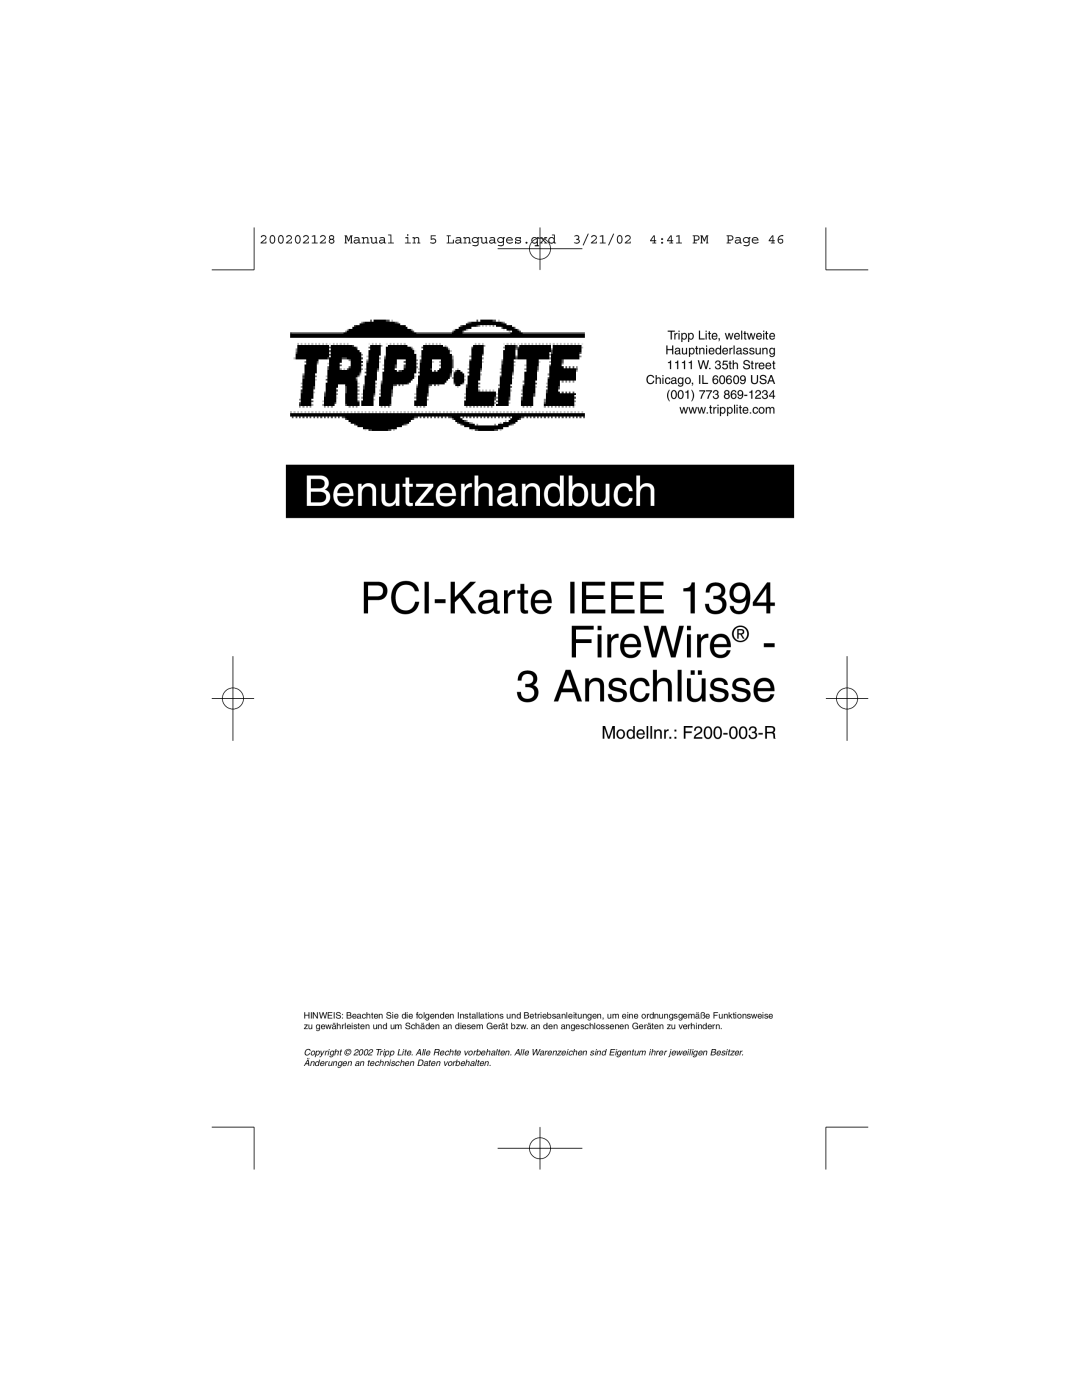 Tripp Lite F200-003-R user manual PCI-Karte IEEE FireWire 3 Anschlüsse, Benutzerhandbuch 